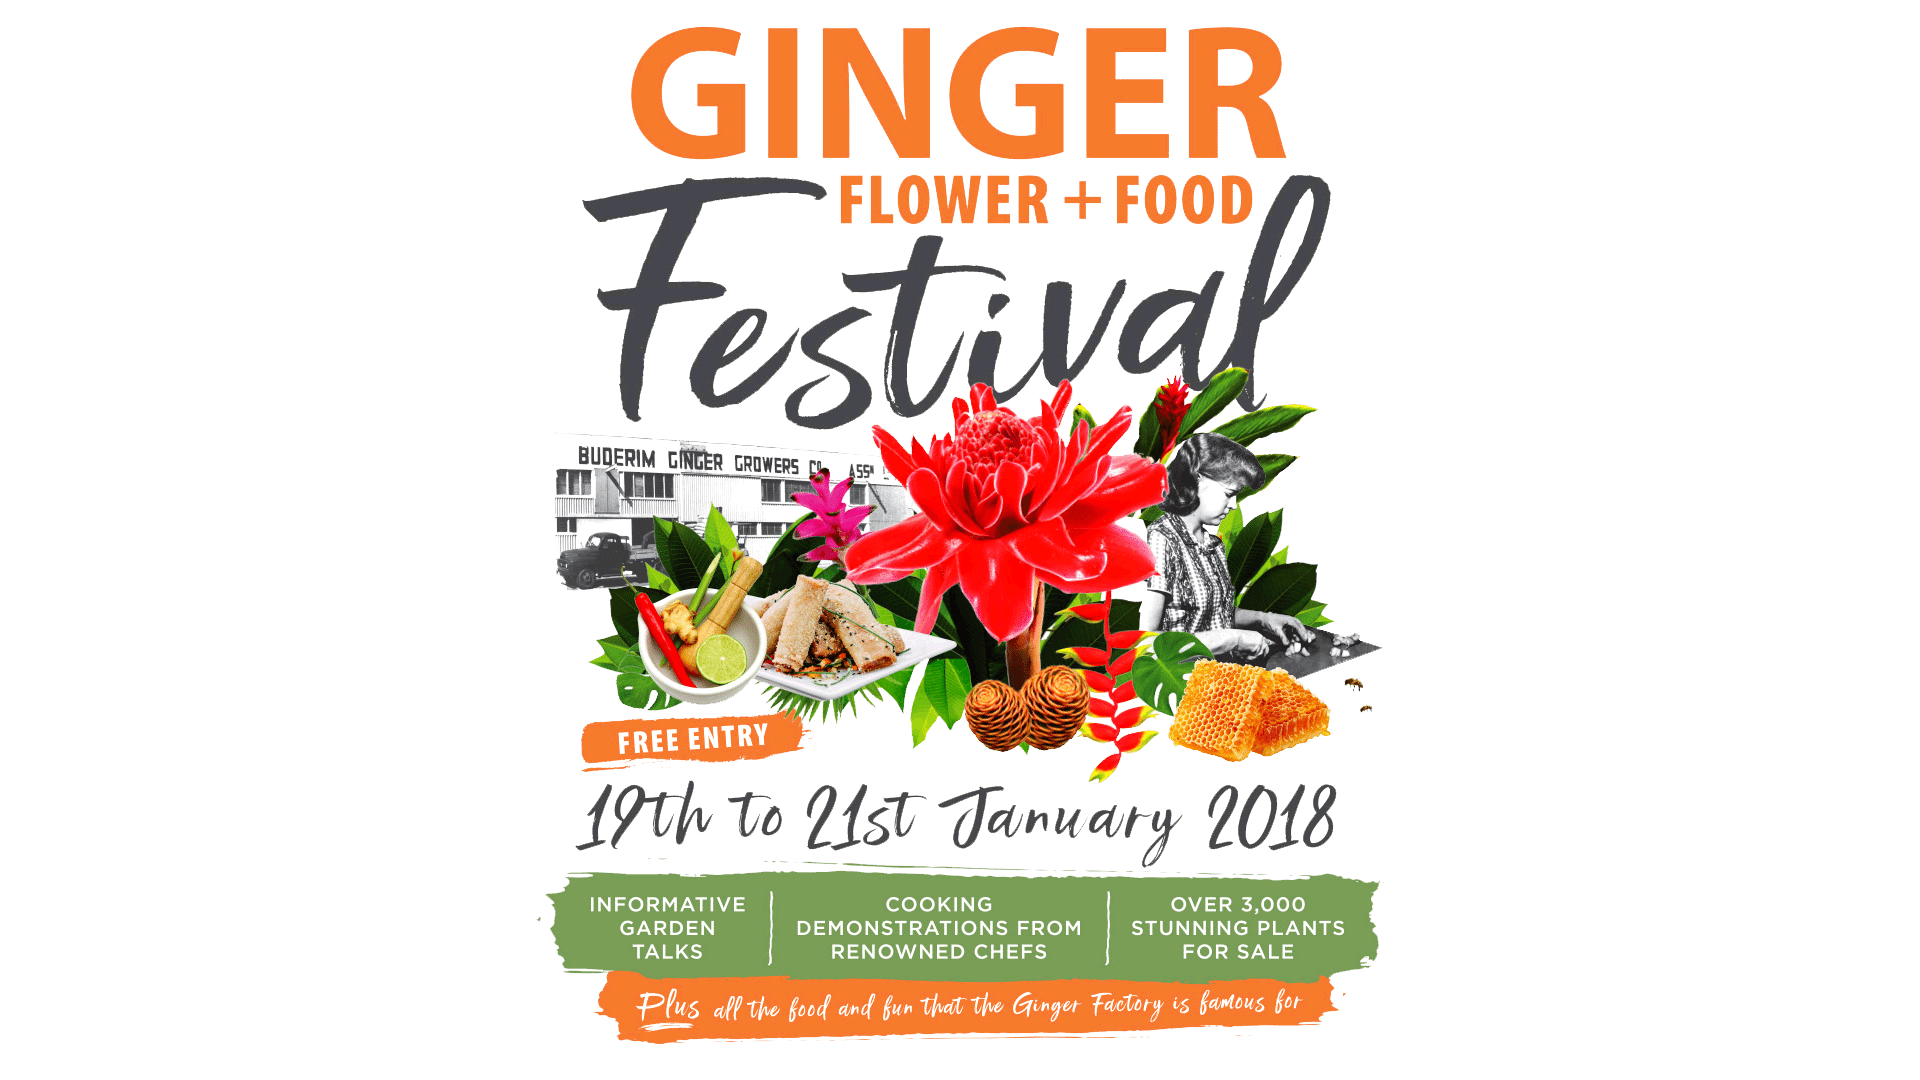 Famous Flower Logo - Ginger-Flower-Food-Festival-Logo-3 - The Ginger Factory